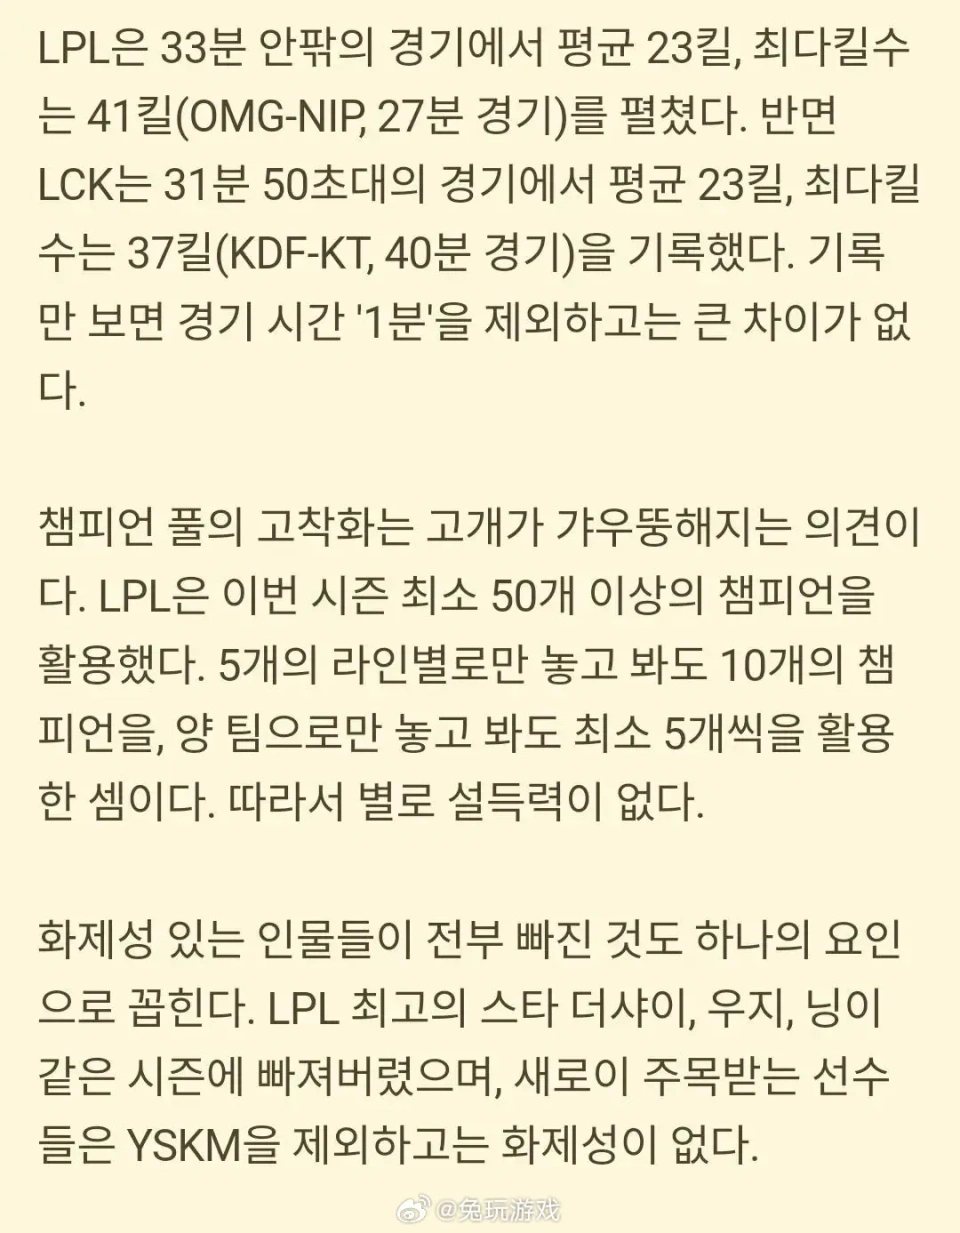 “韩媒分析LPL热度狂跌50%图”火了，被T1一穿四，Theshy等人分开 第2张图片